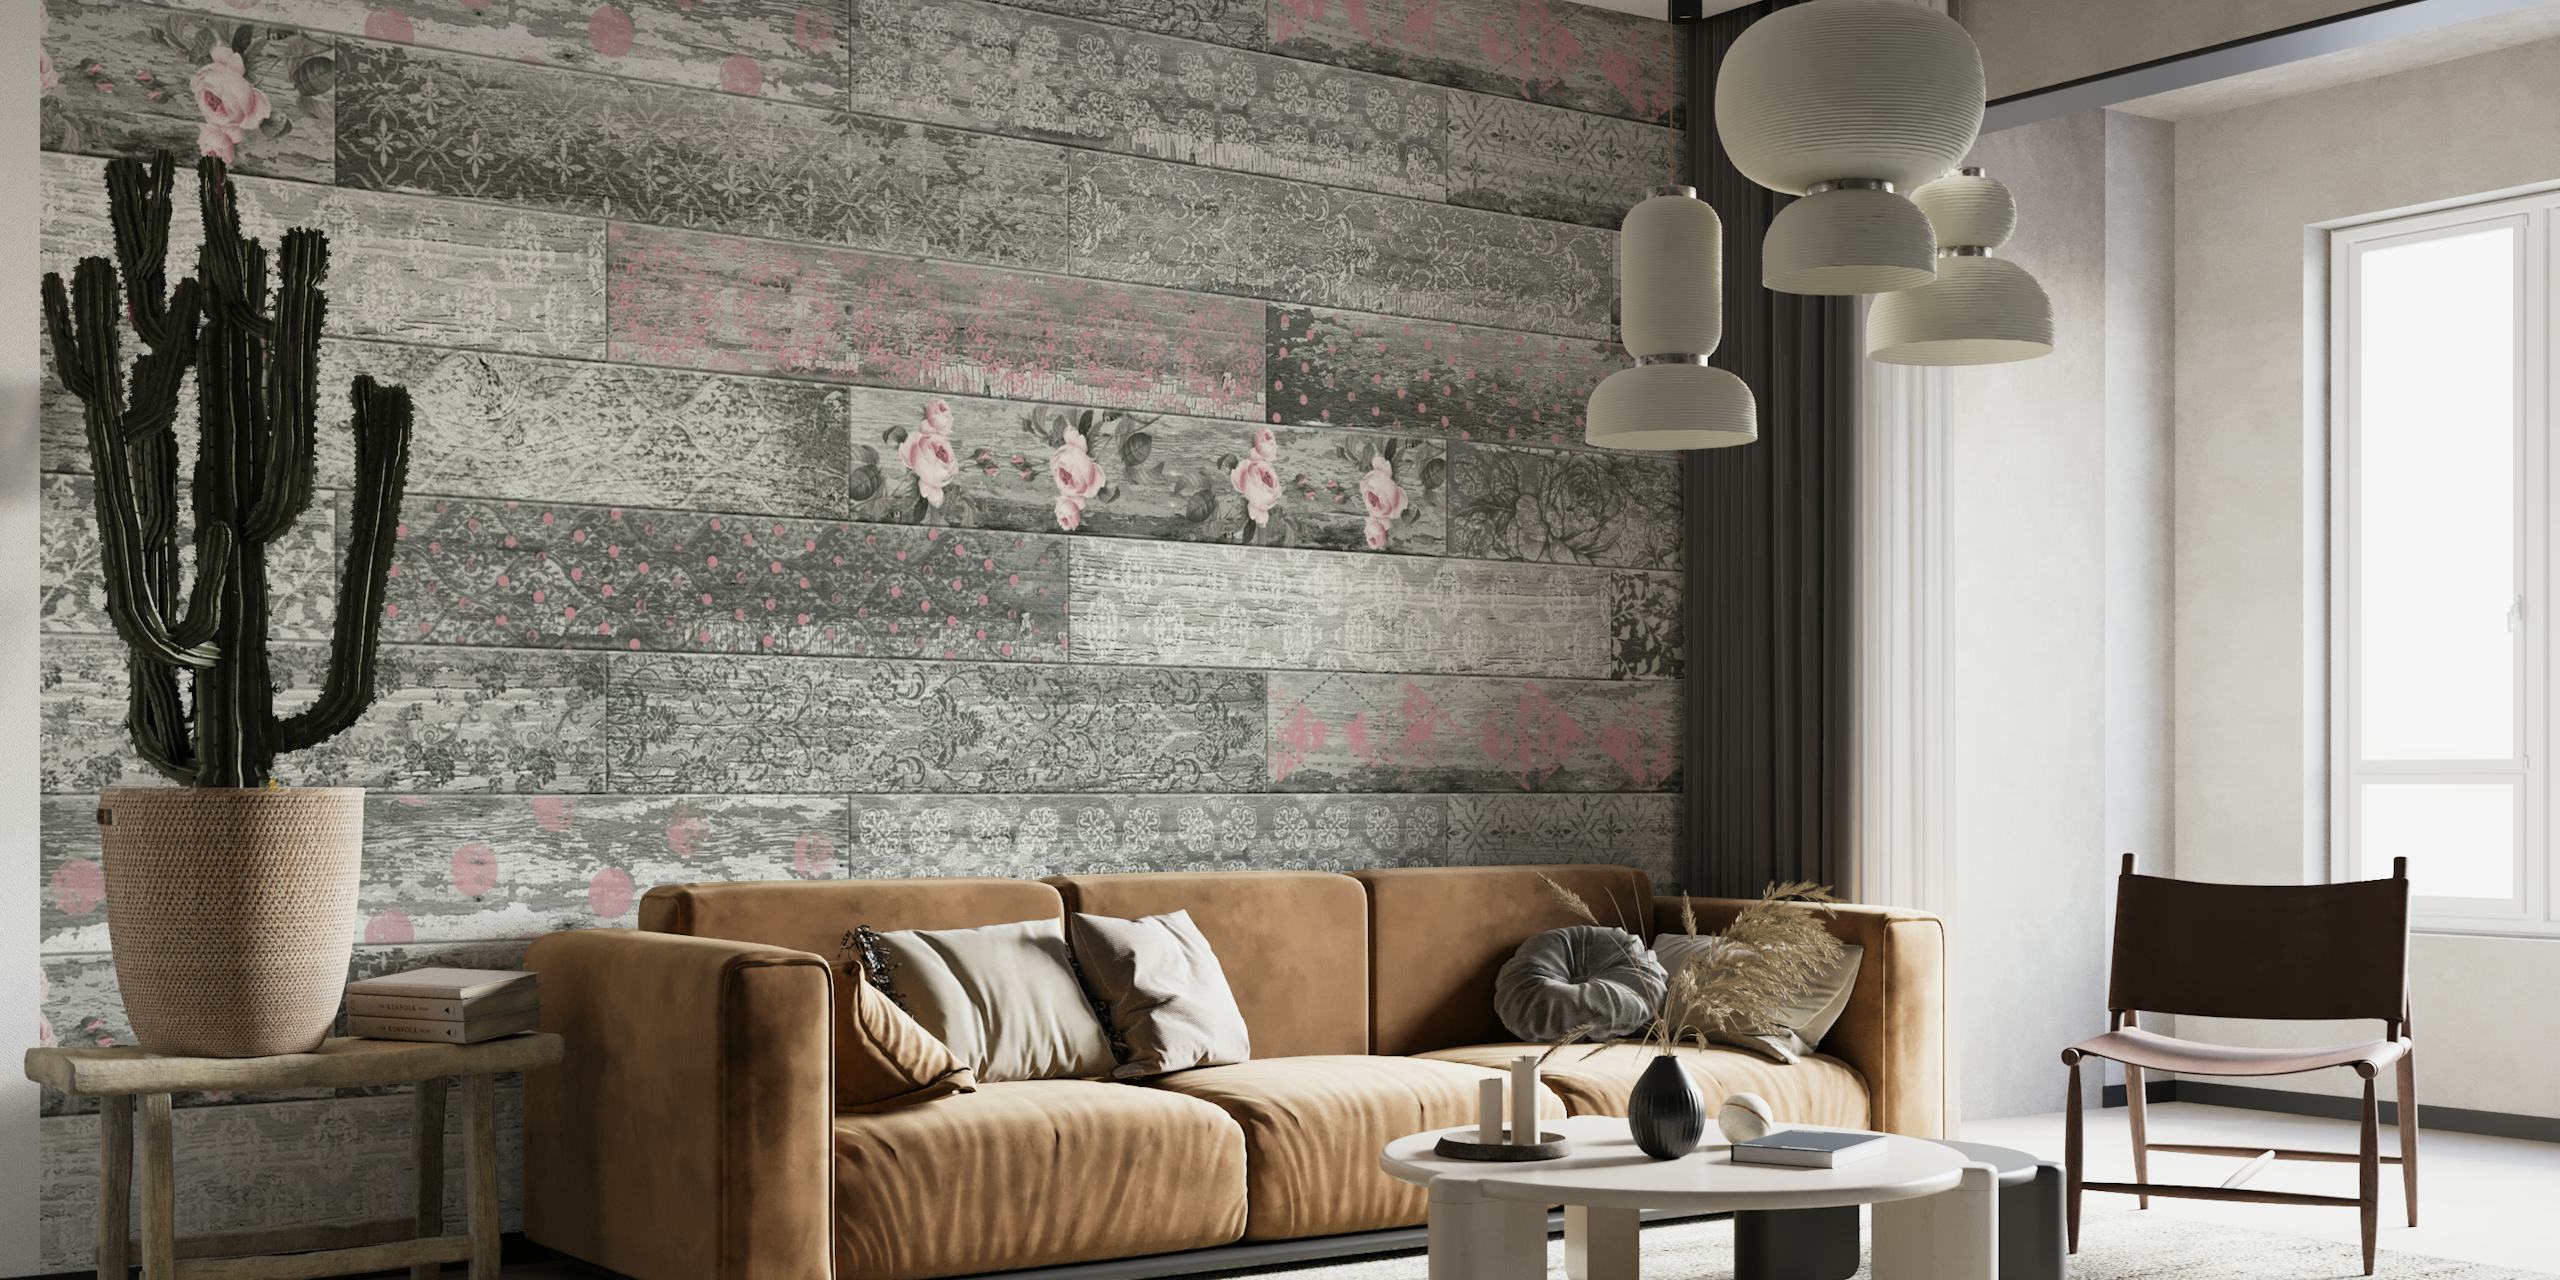 Vintage Wood Tiles Pink Grey fotobehang met een illusie van getextureerde houten panelen in roze en grijze tinten